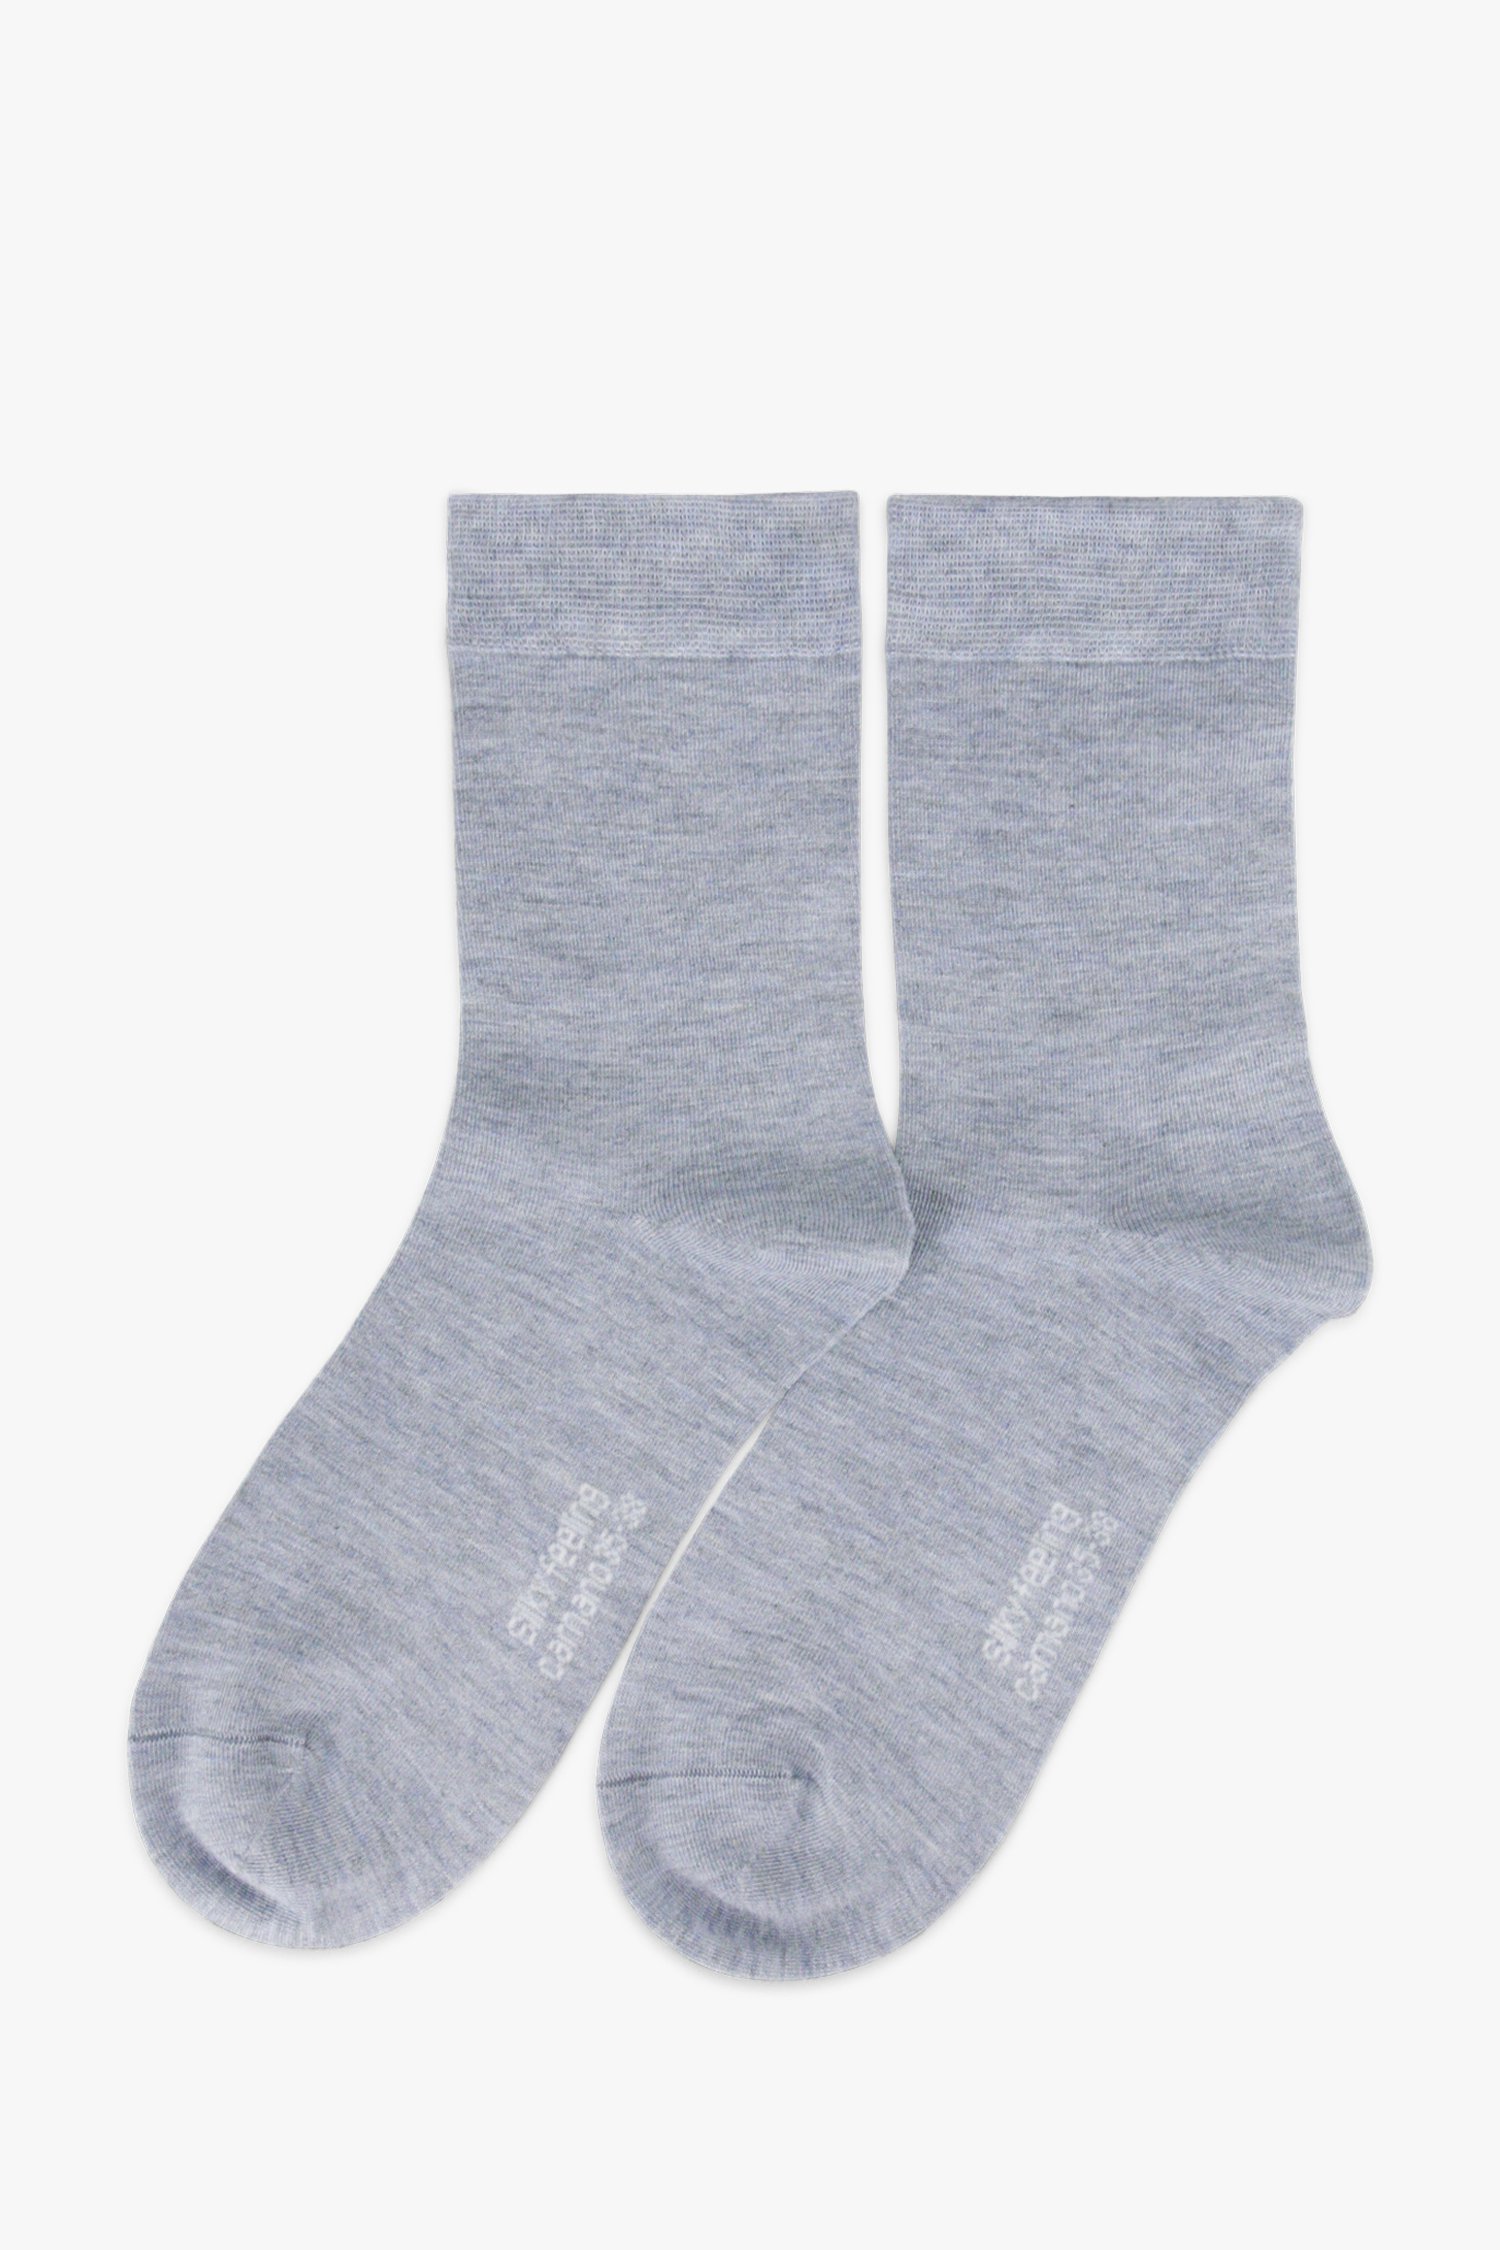 Lichtblauwe sokken - 2 paar van Camano voor Dames